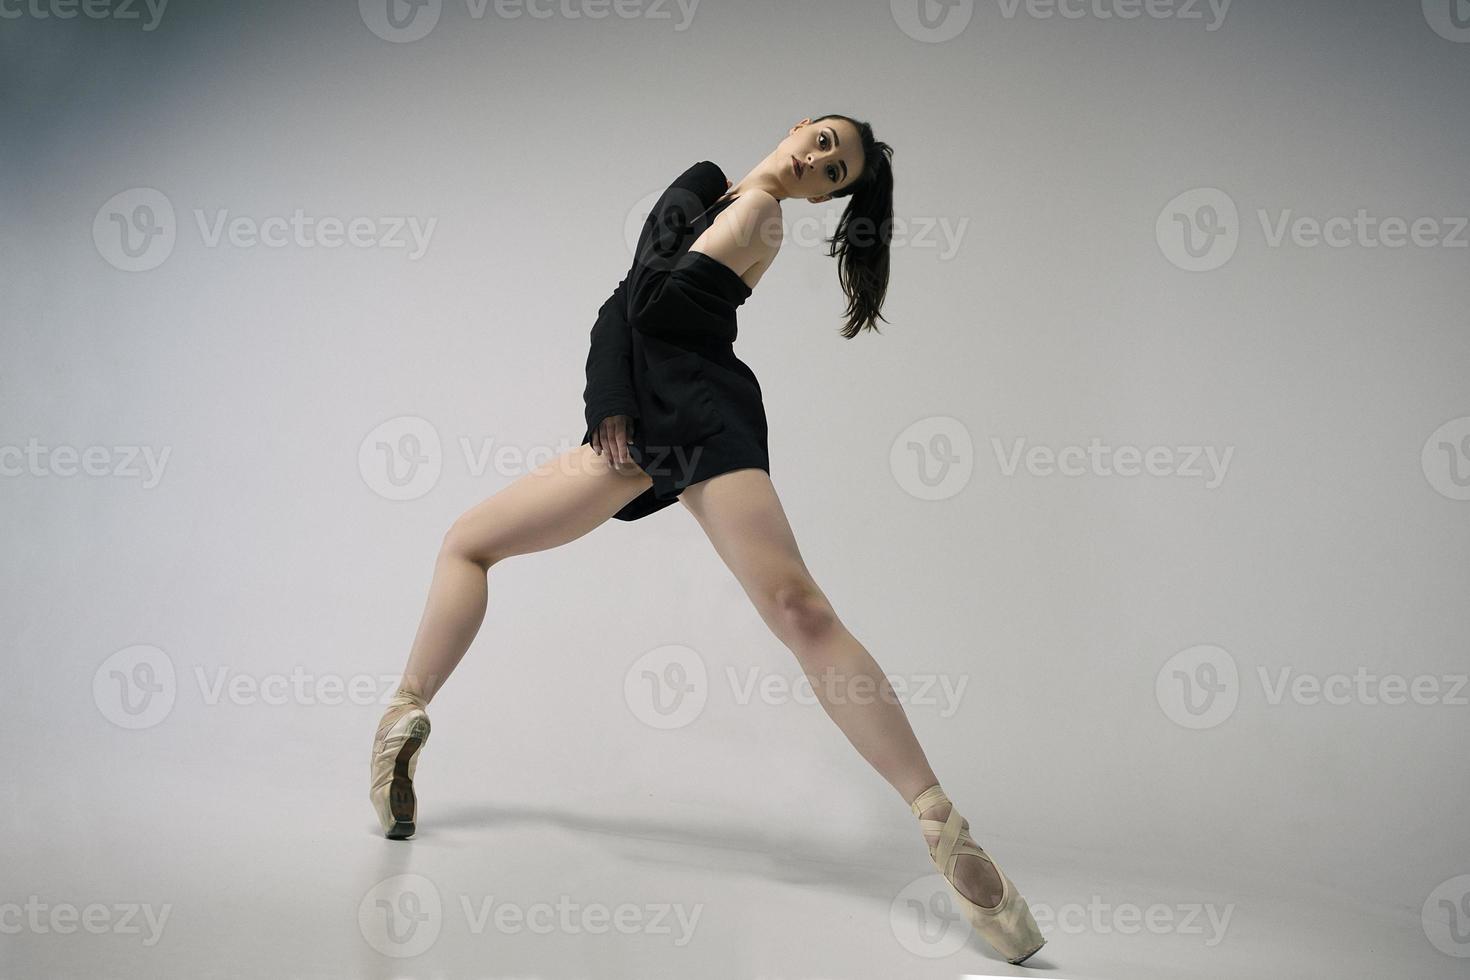 ballerina i bodysuit och svart jacka improviserar klassisk och modern koreografi i en fotostudio foto